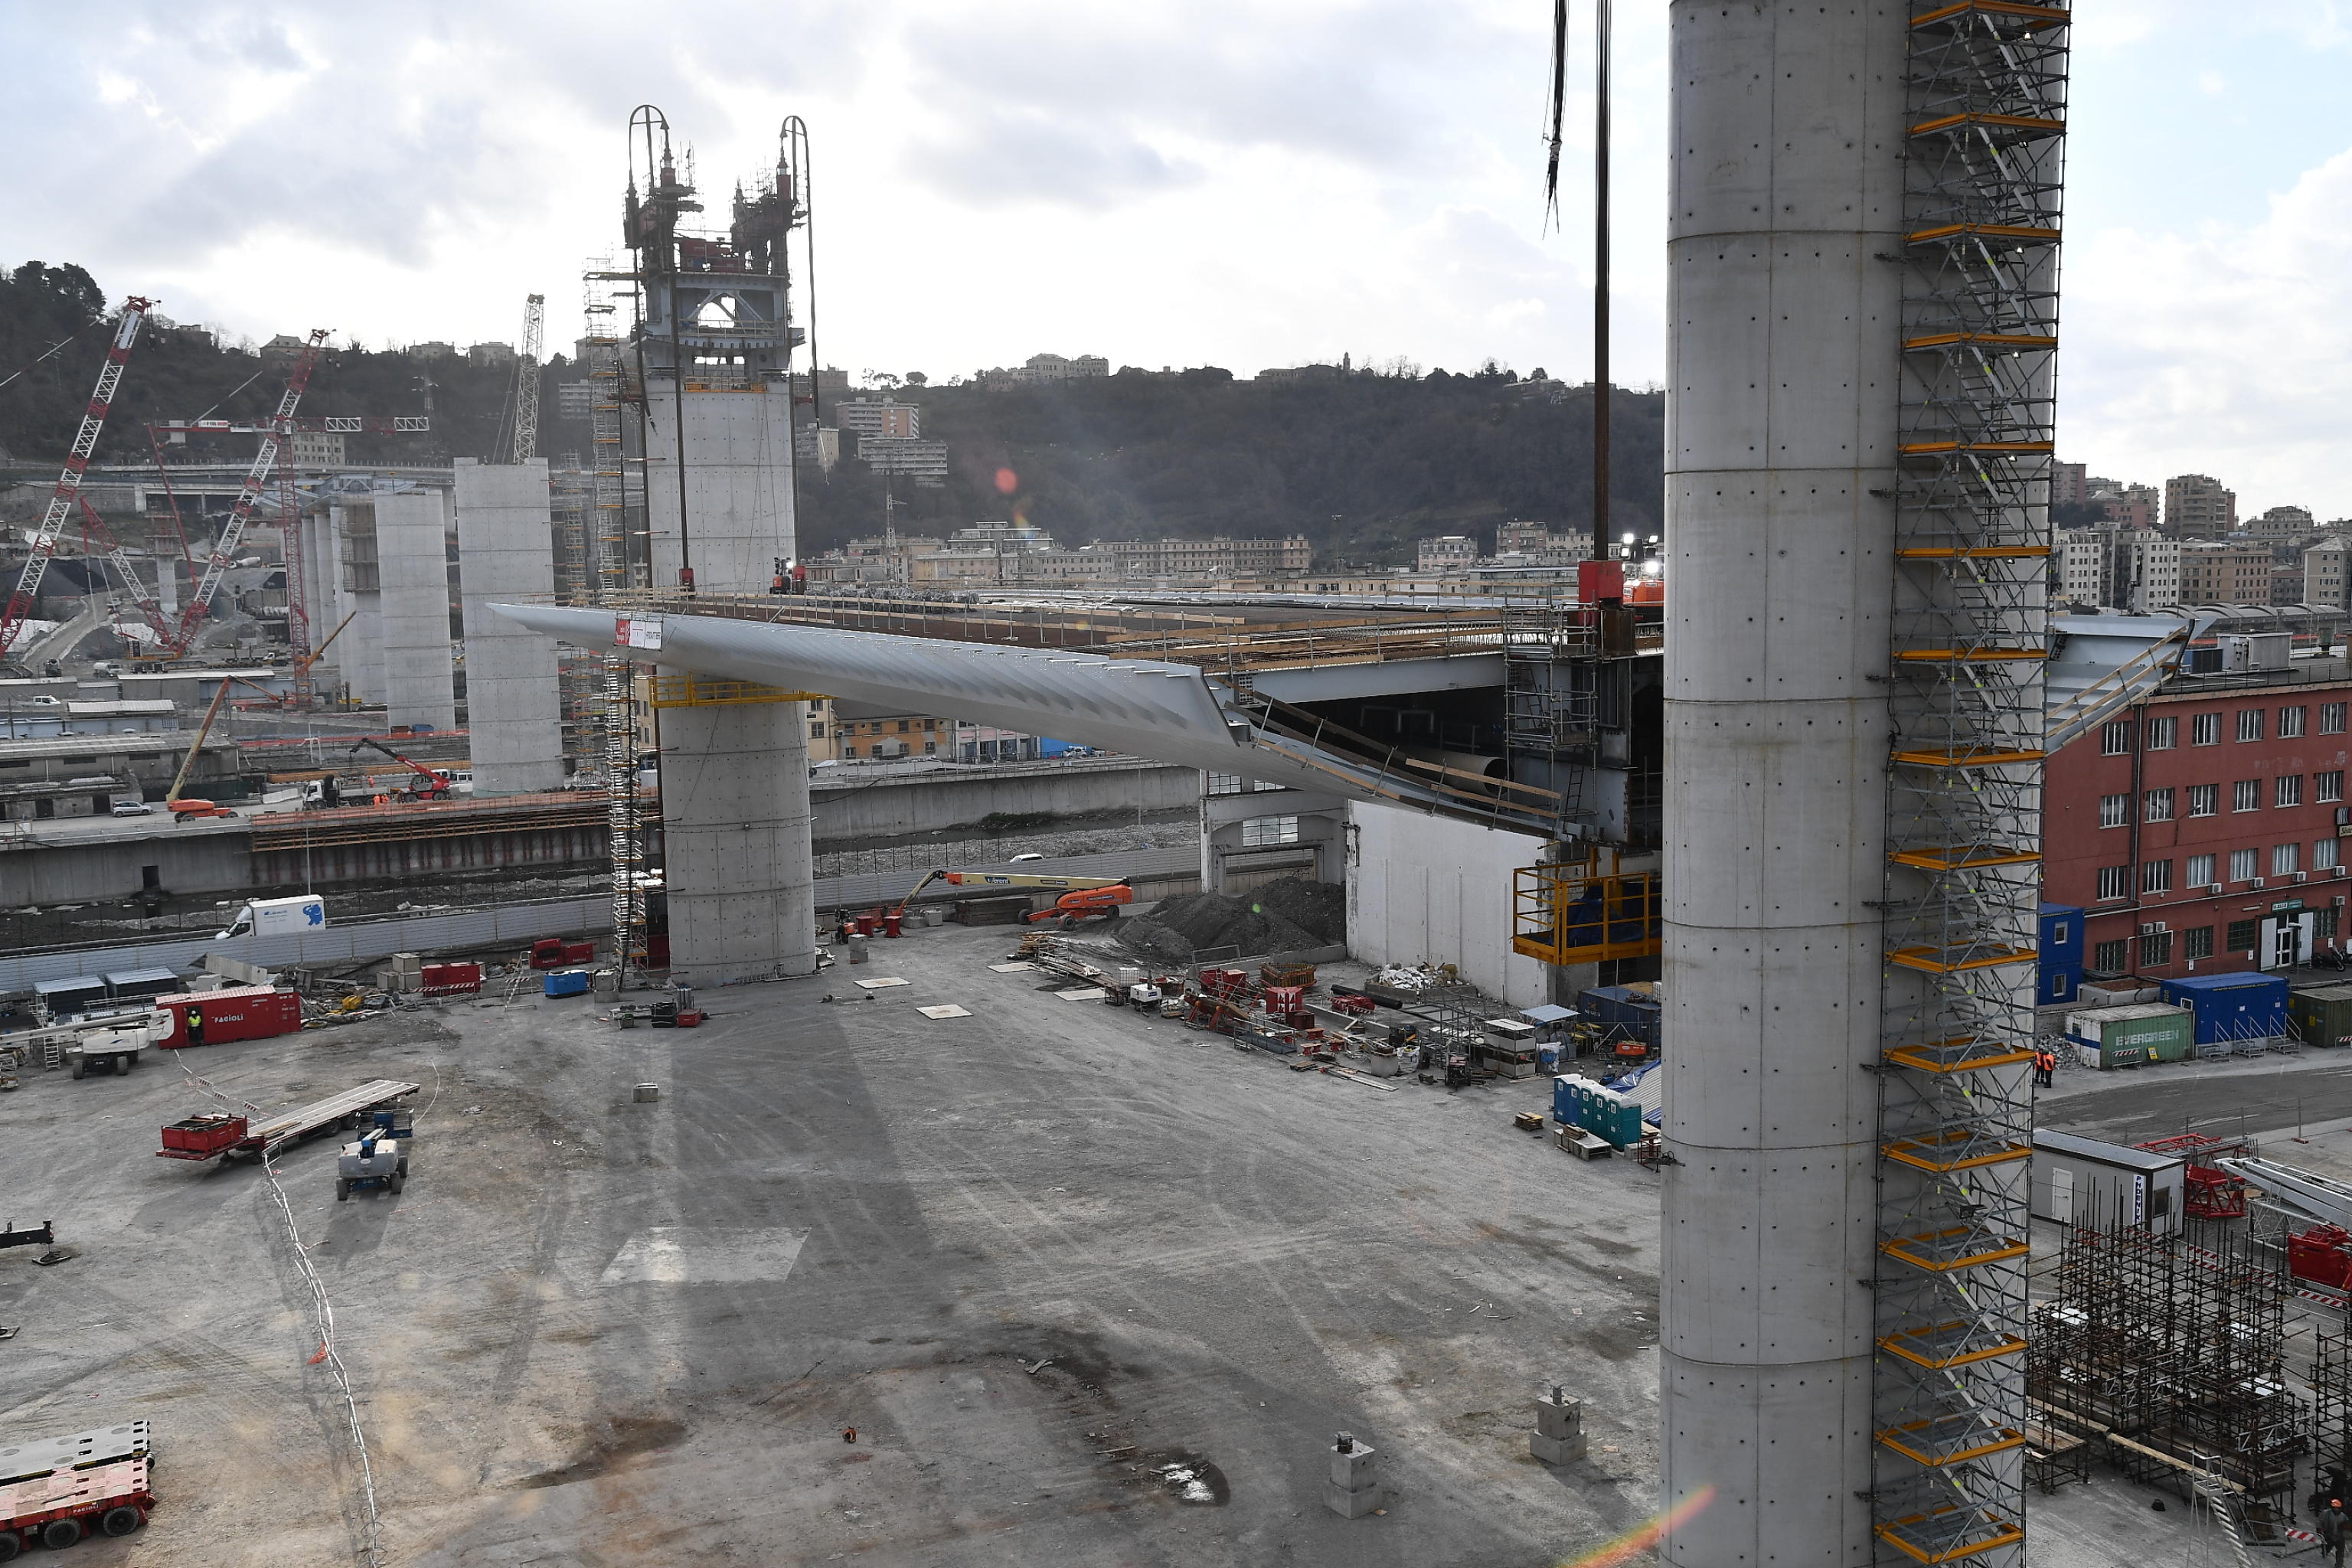 La prima trave innalzata per la costruzione del nuovo Ponte Morandi